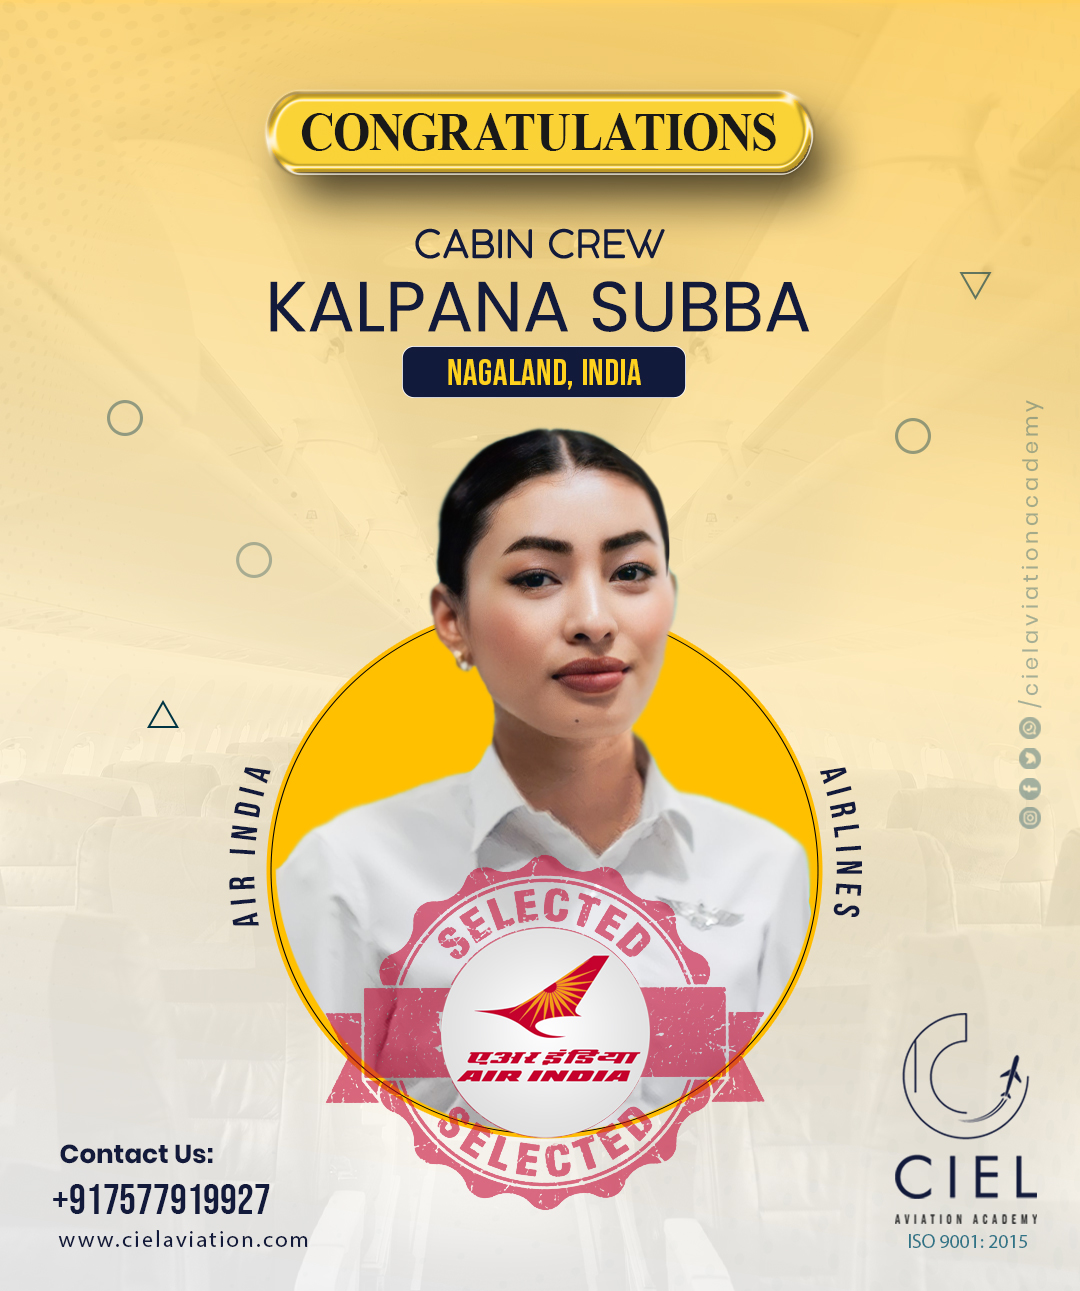 Ciel Aviation Academy - Kalpana Subba